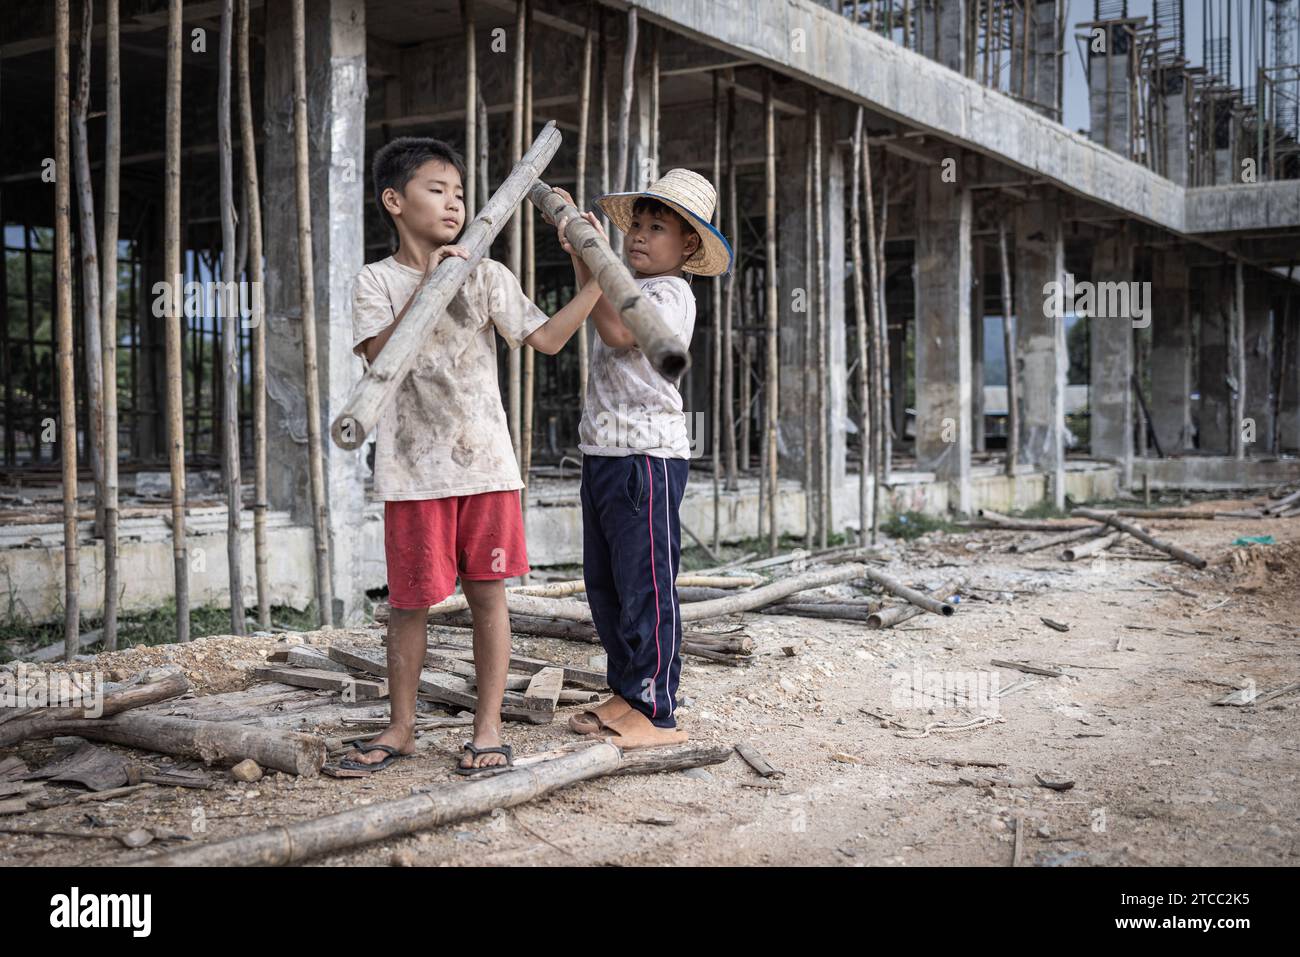 Konzept der Kinderarbeit, arme Kinder als Opfer von Bauarbeit, Menschenhandel, Kindesmisshandlung. Stockfoto